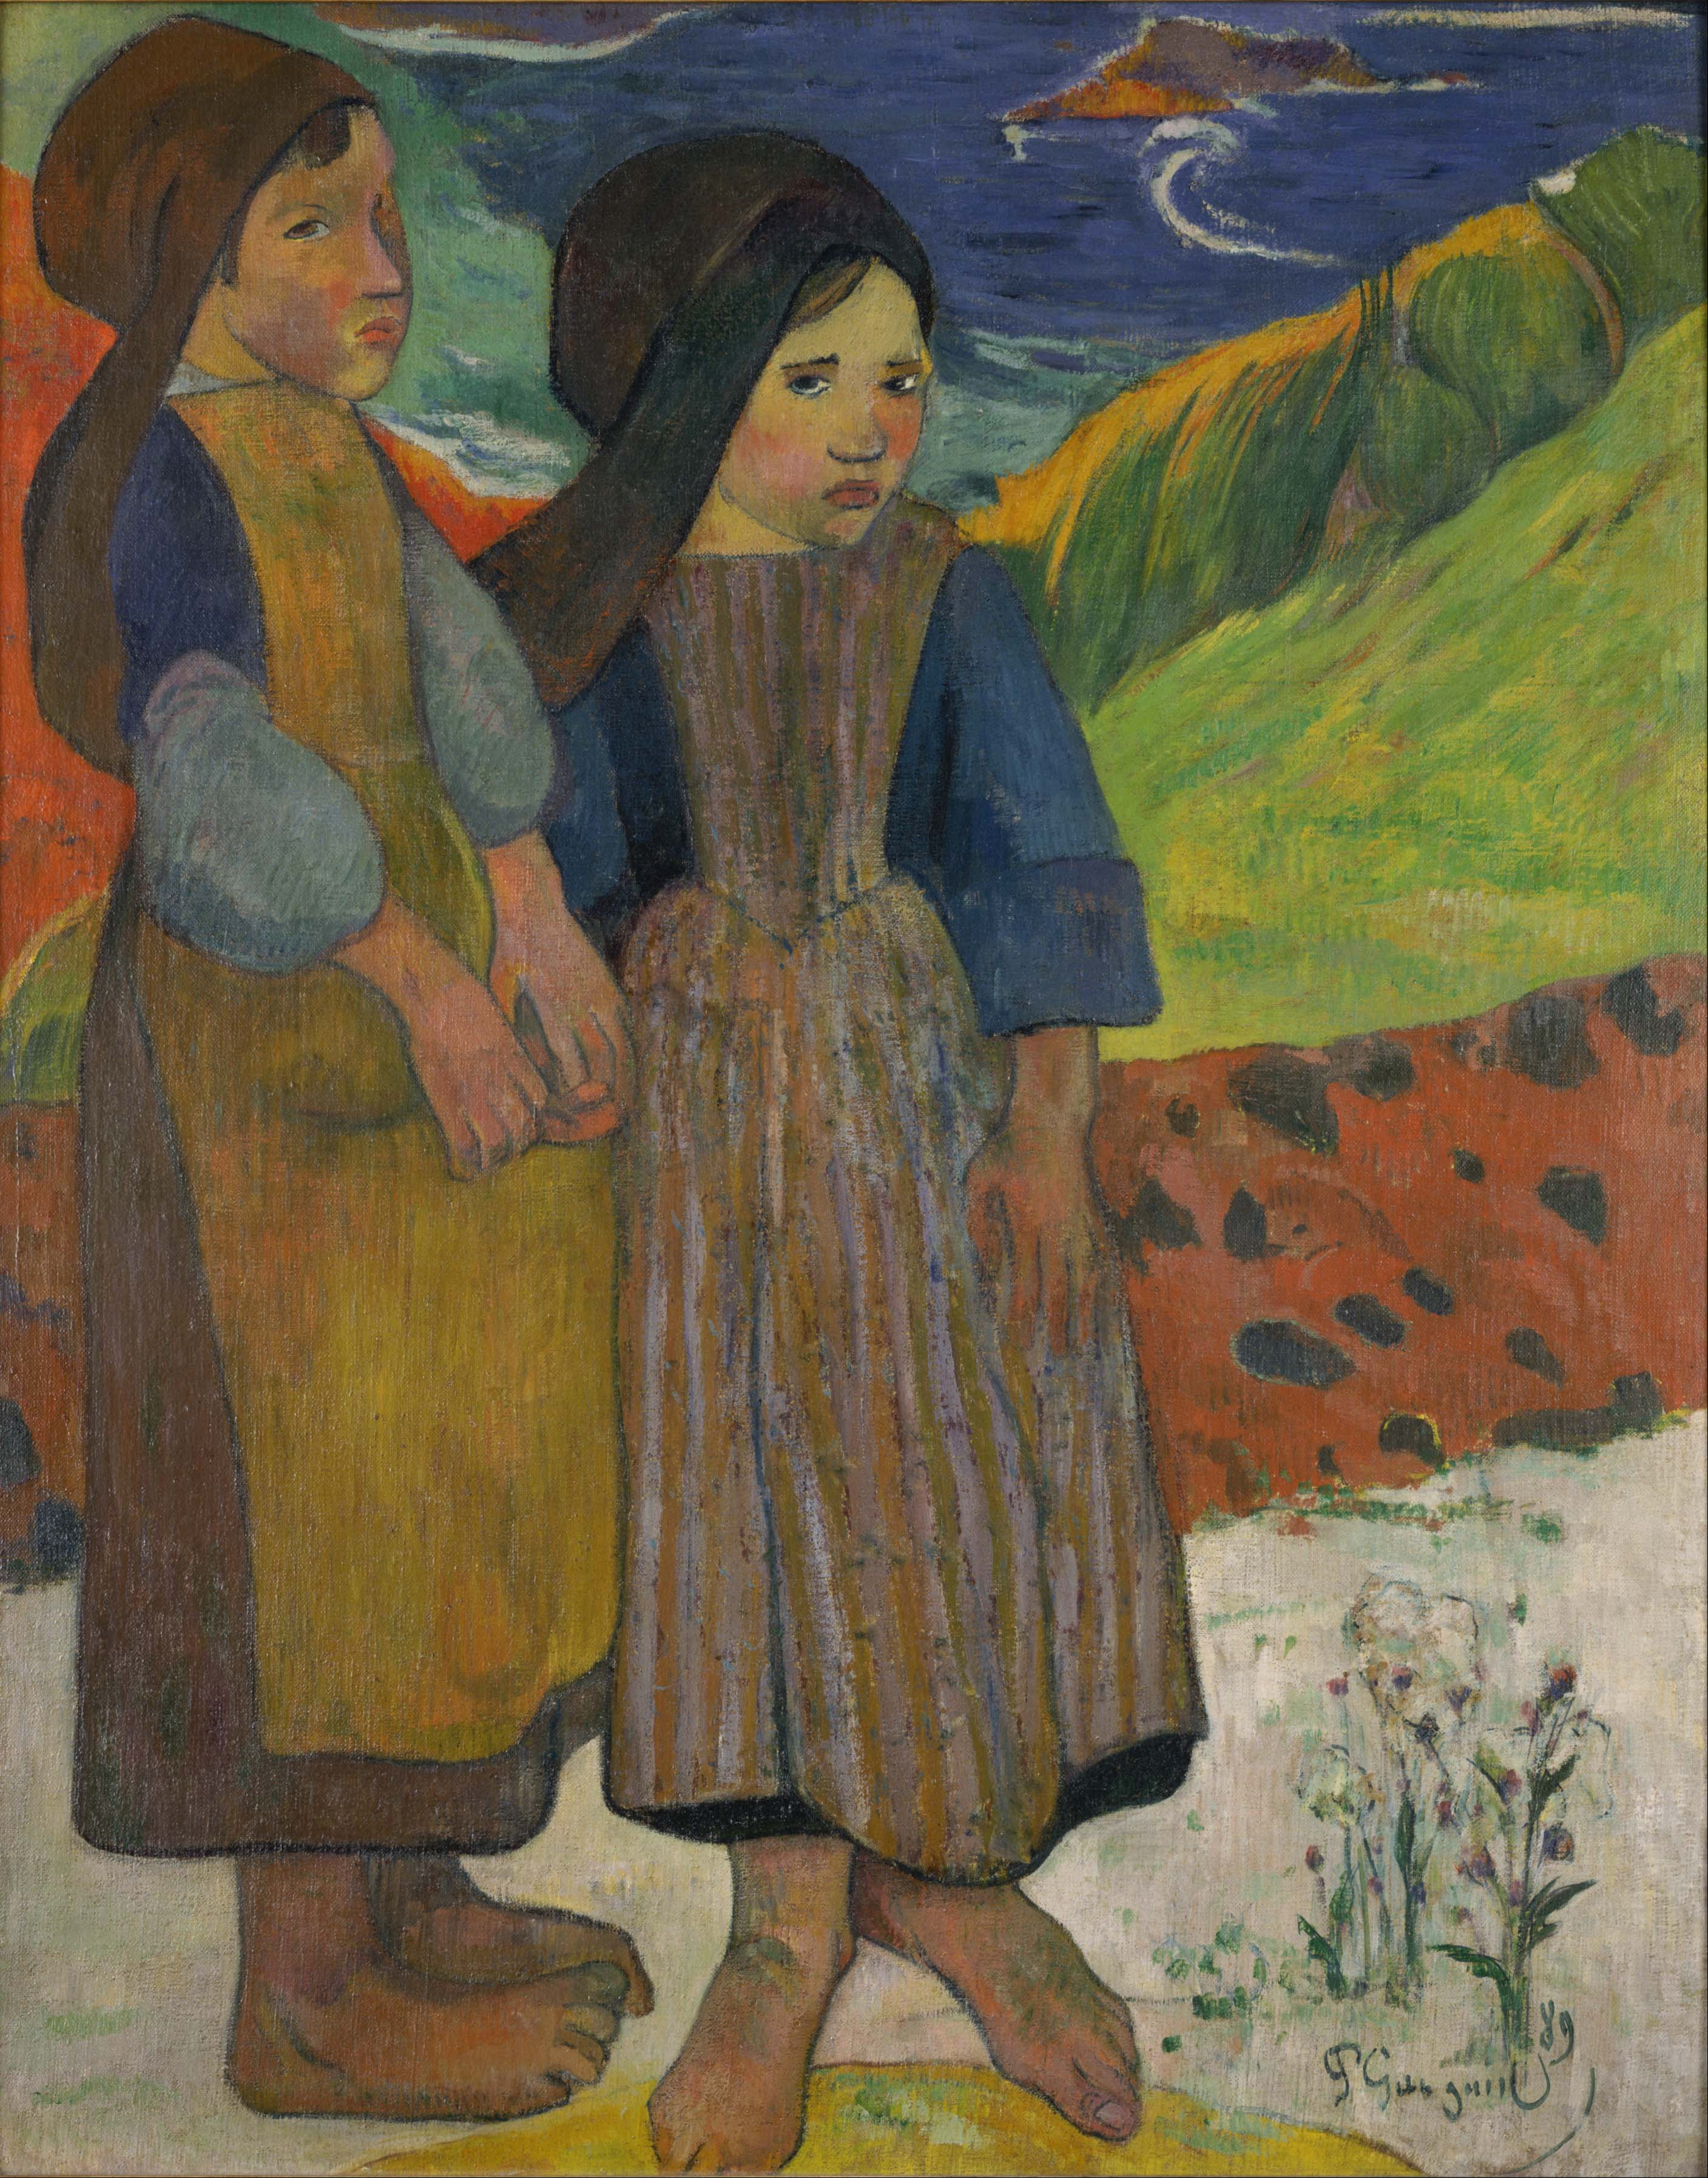 فتاتان بريتون بجوار البحر by Paul Gauguin - 1889م - 73.6 x 92.5 cm 